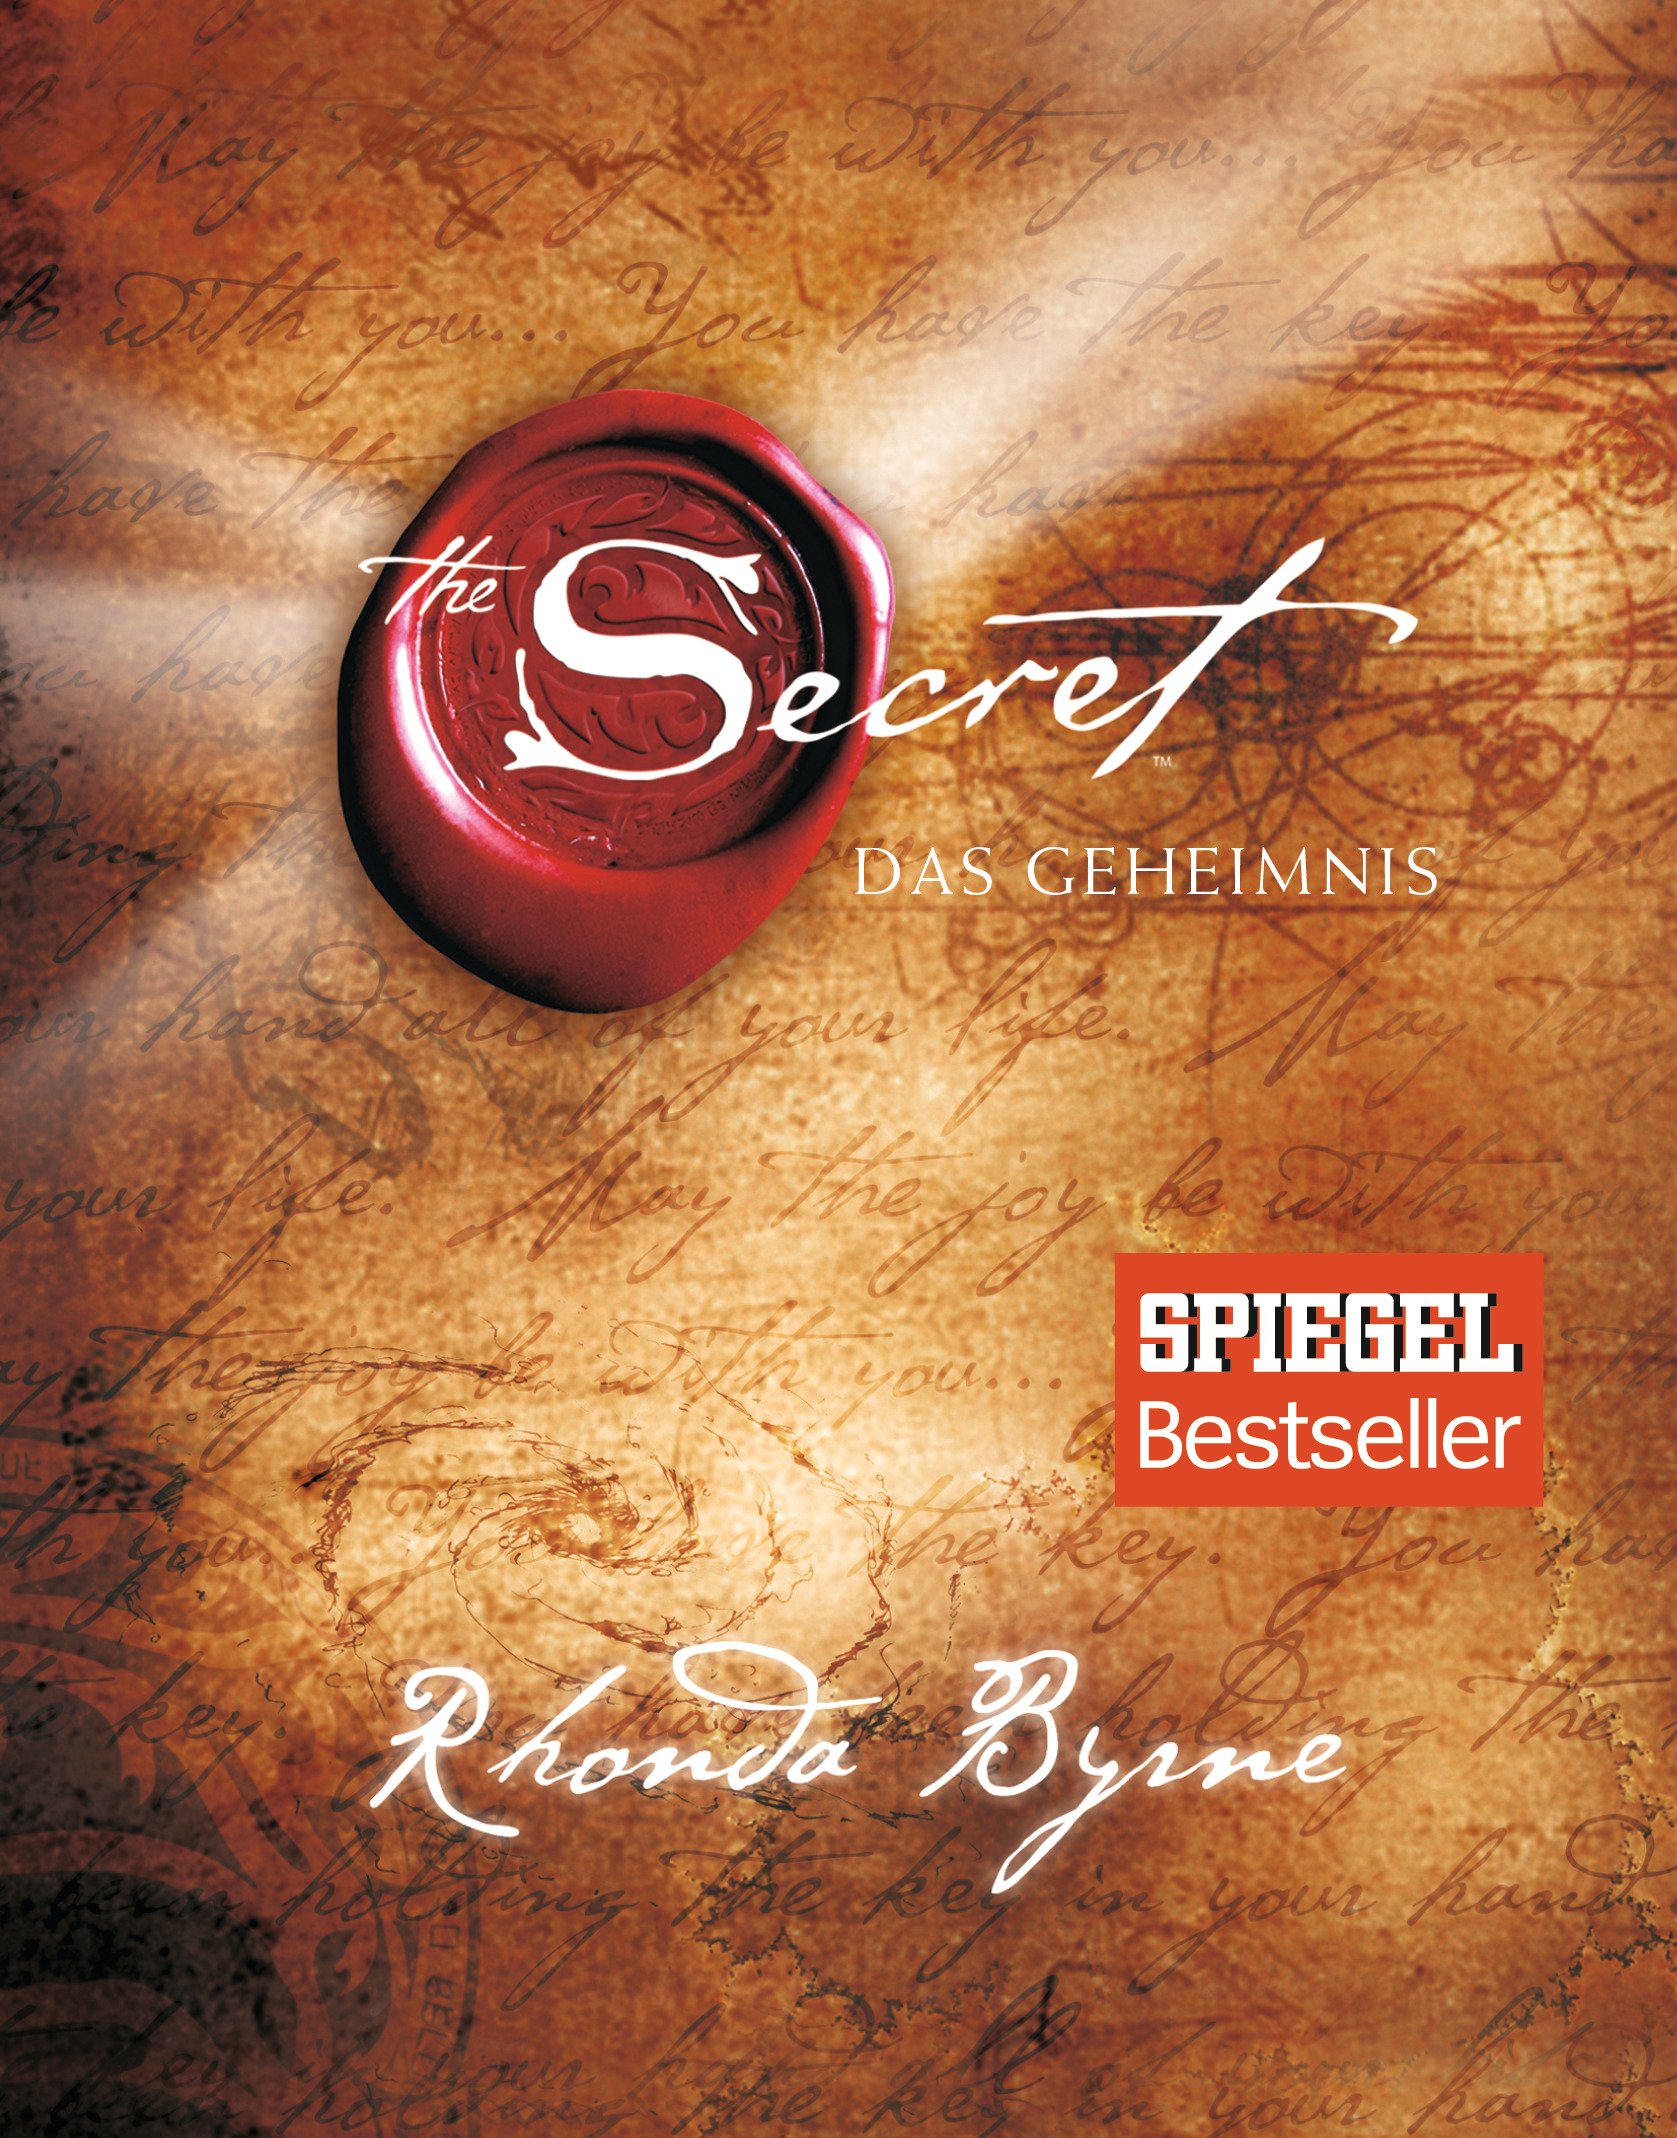 The Secret – Das Geheimnis von Rhonda Byrne